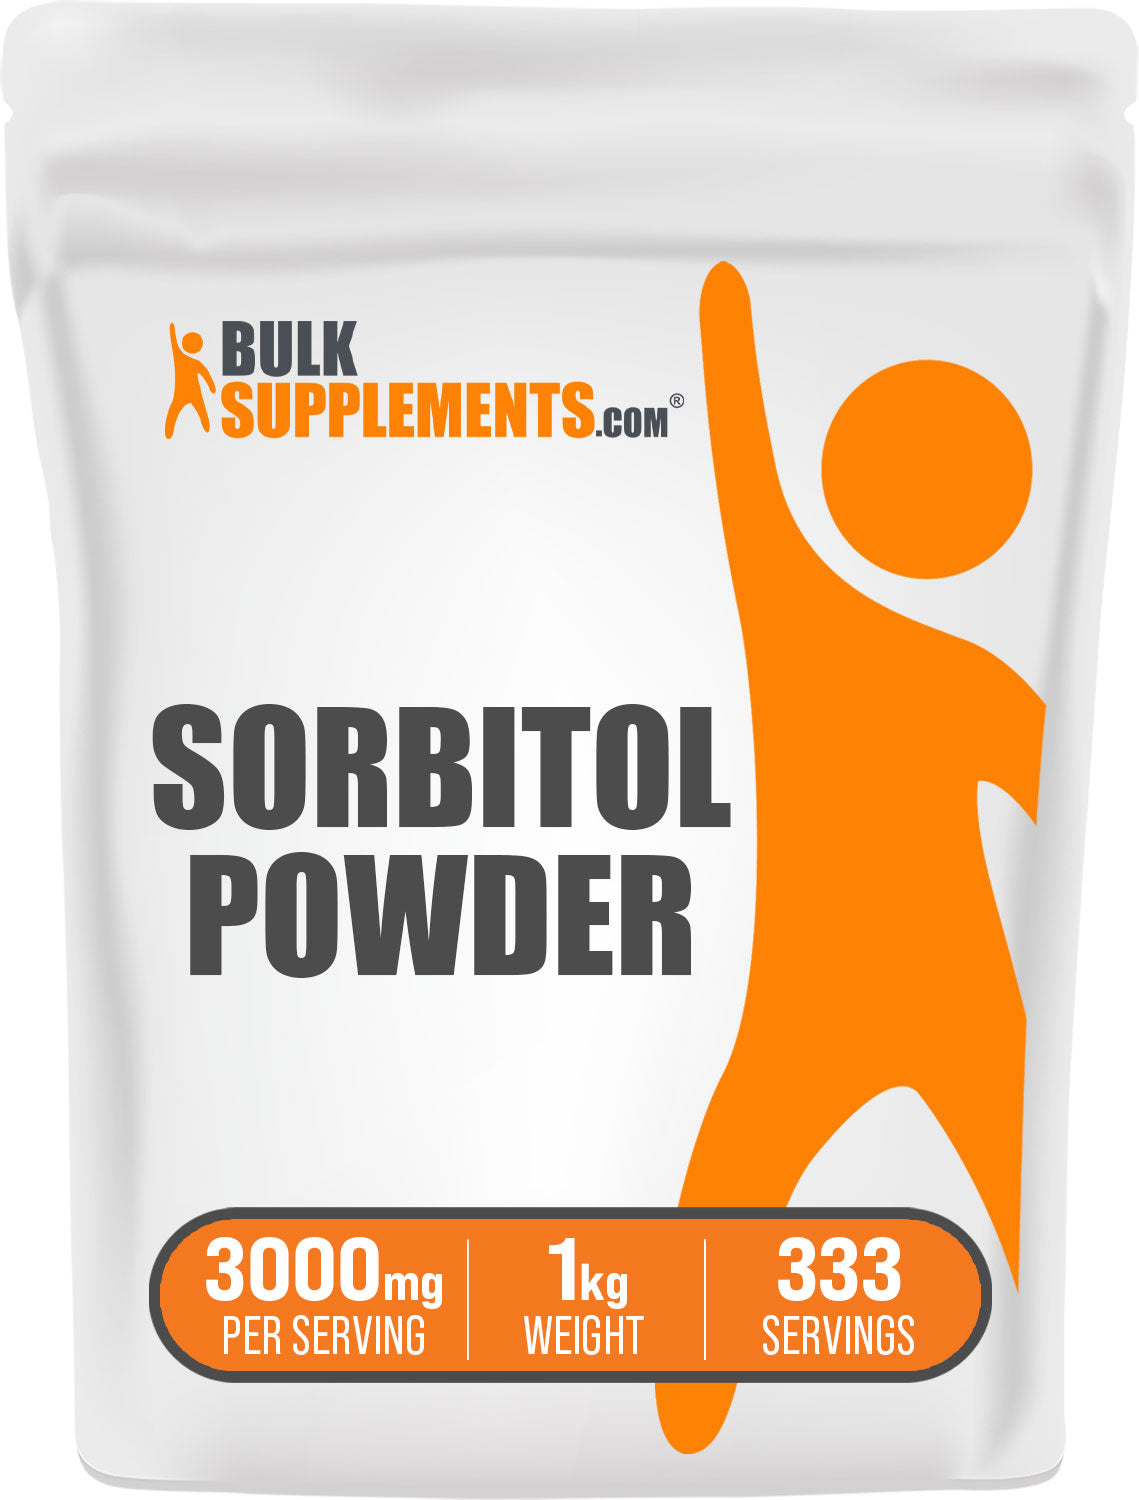 BulkSupplements.com Sorbitol Powder 1kg Bag